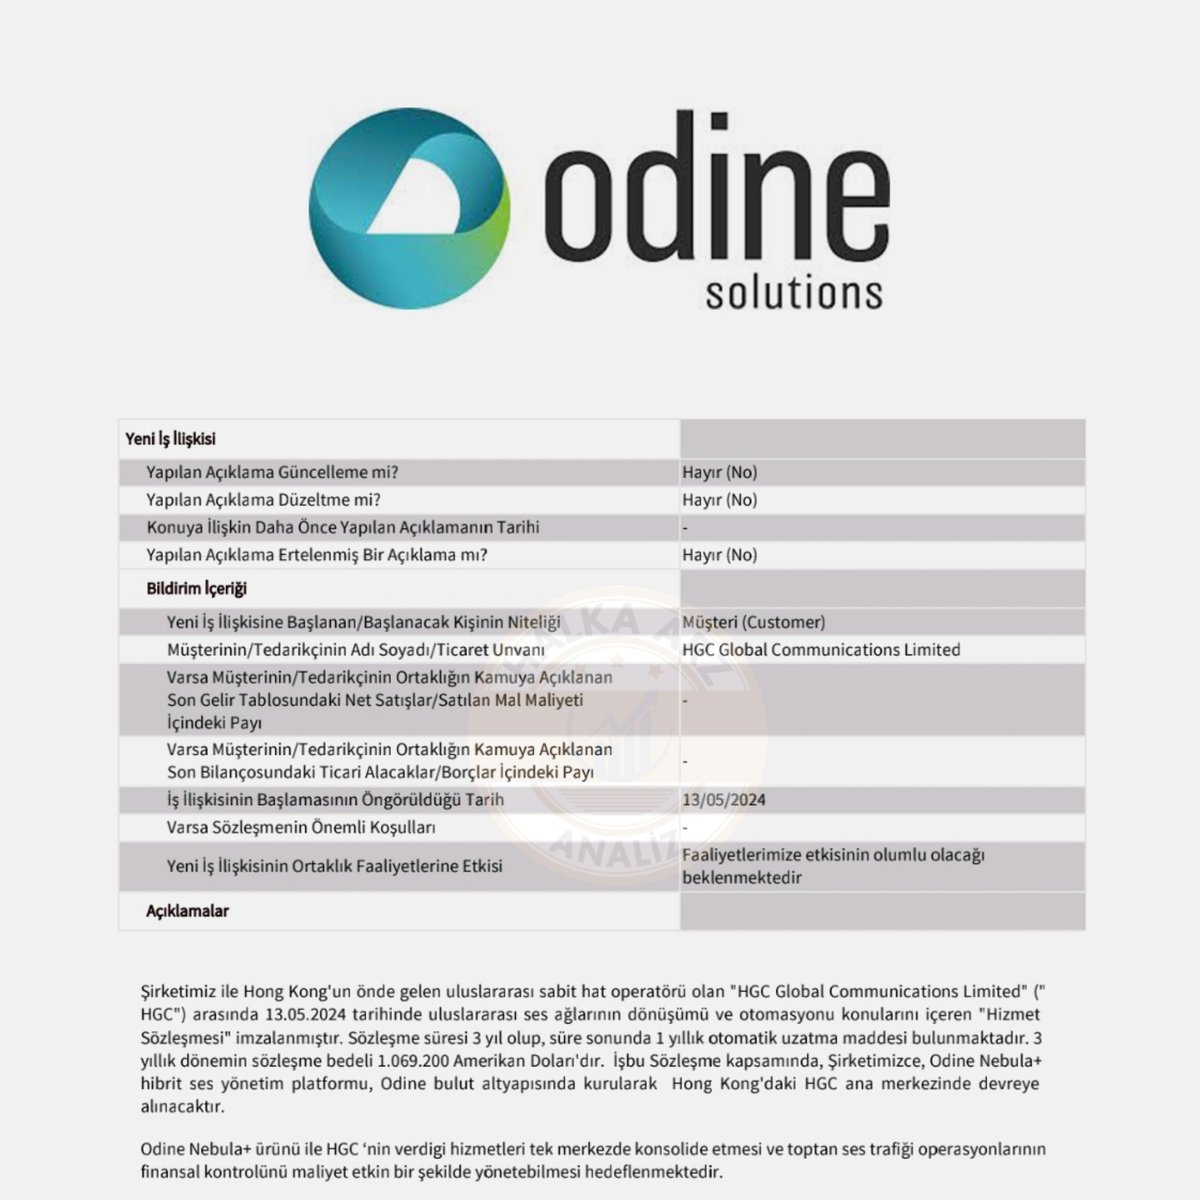 📢 Odine Solutions Teknoloji #ODİNE Hong Kong'un sabit hat operatörü olan HGC Global Communications Limited ile uluslararası ses ağlarının dönüşümü ve otomasyonu konusunda 1.069.200€ tutarında 3 yıllık sözleşme imzaladığını #KAP'a bildirdi. #Halkaarz #Borsa #Hisse #Odine